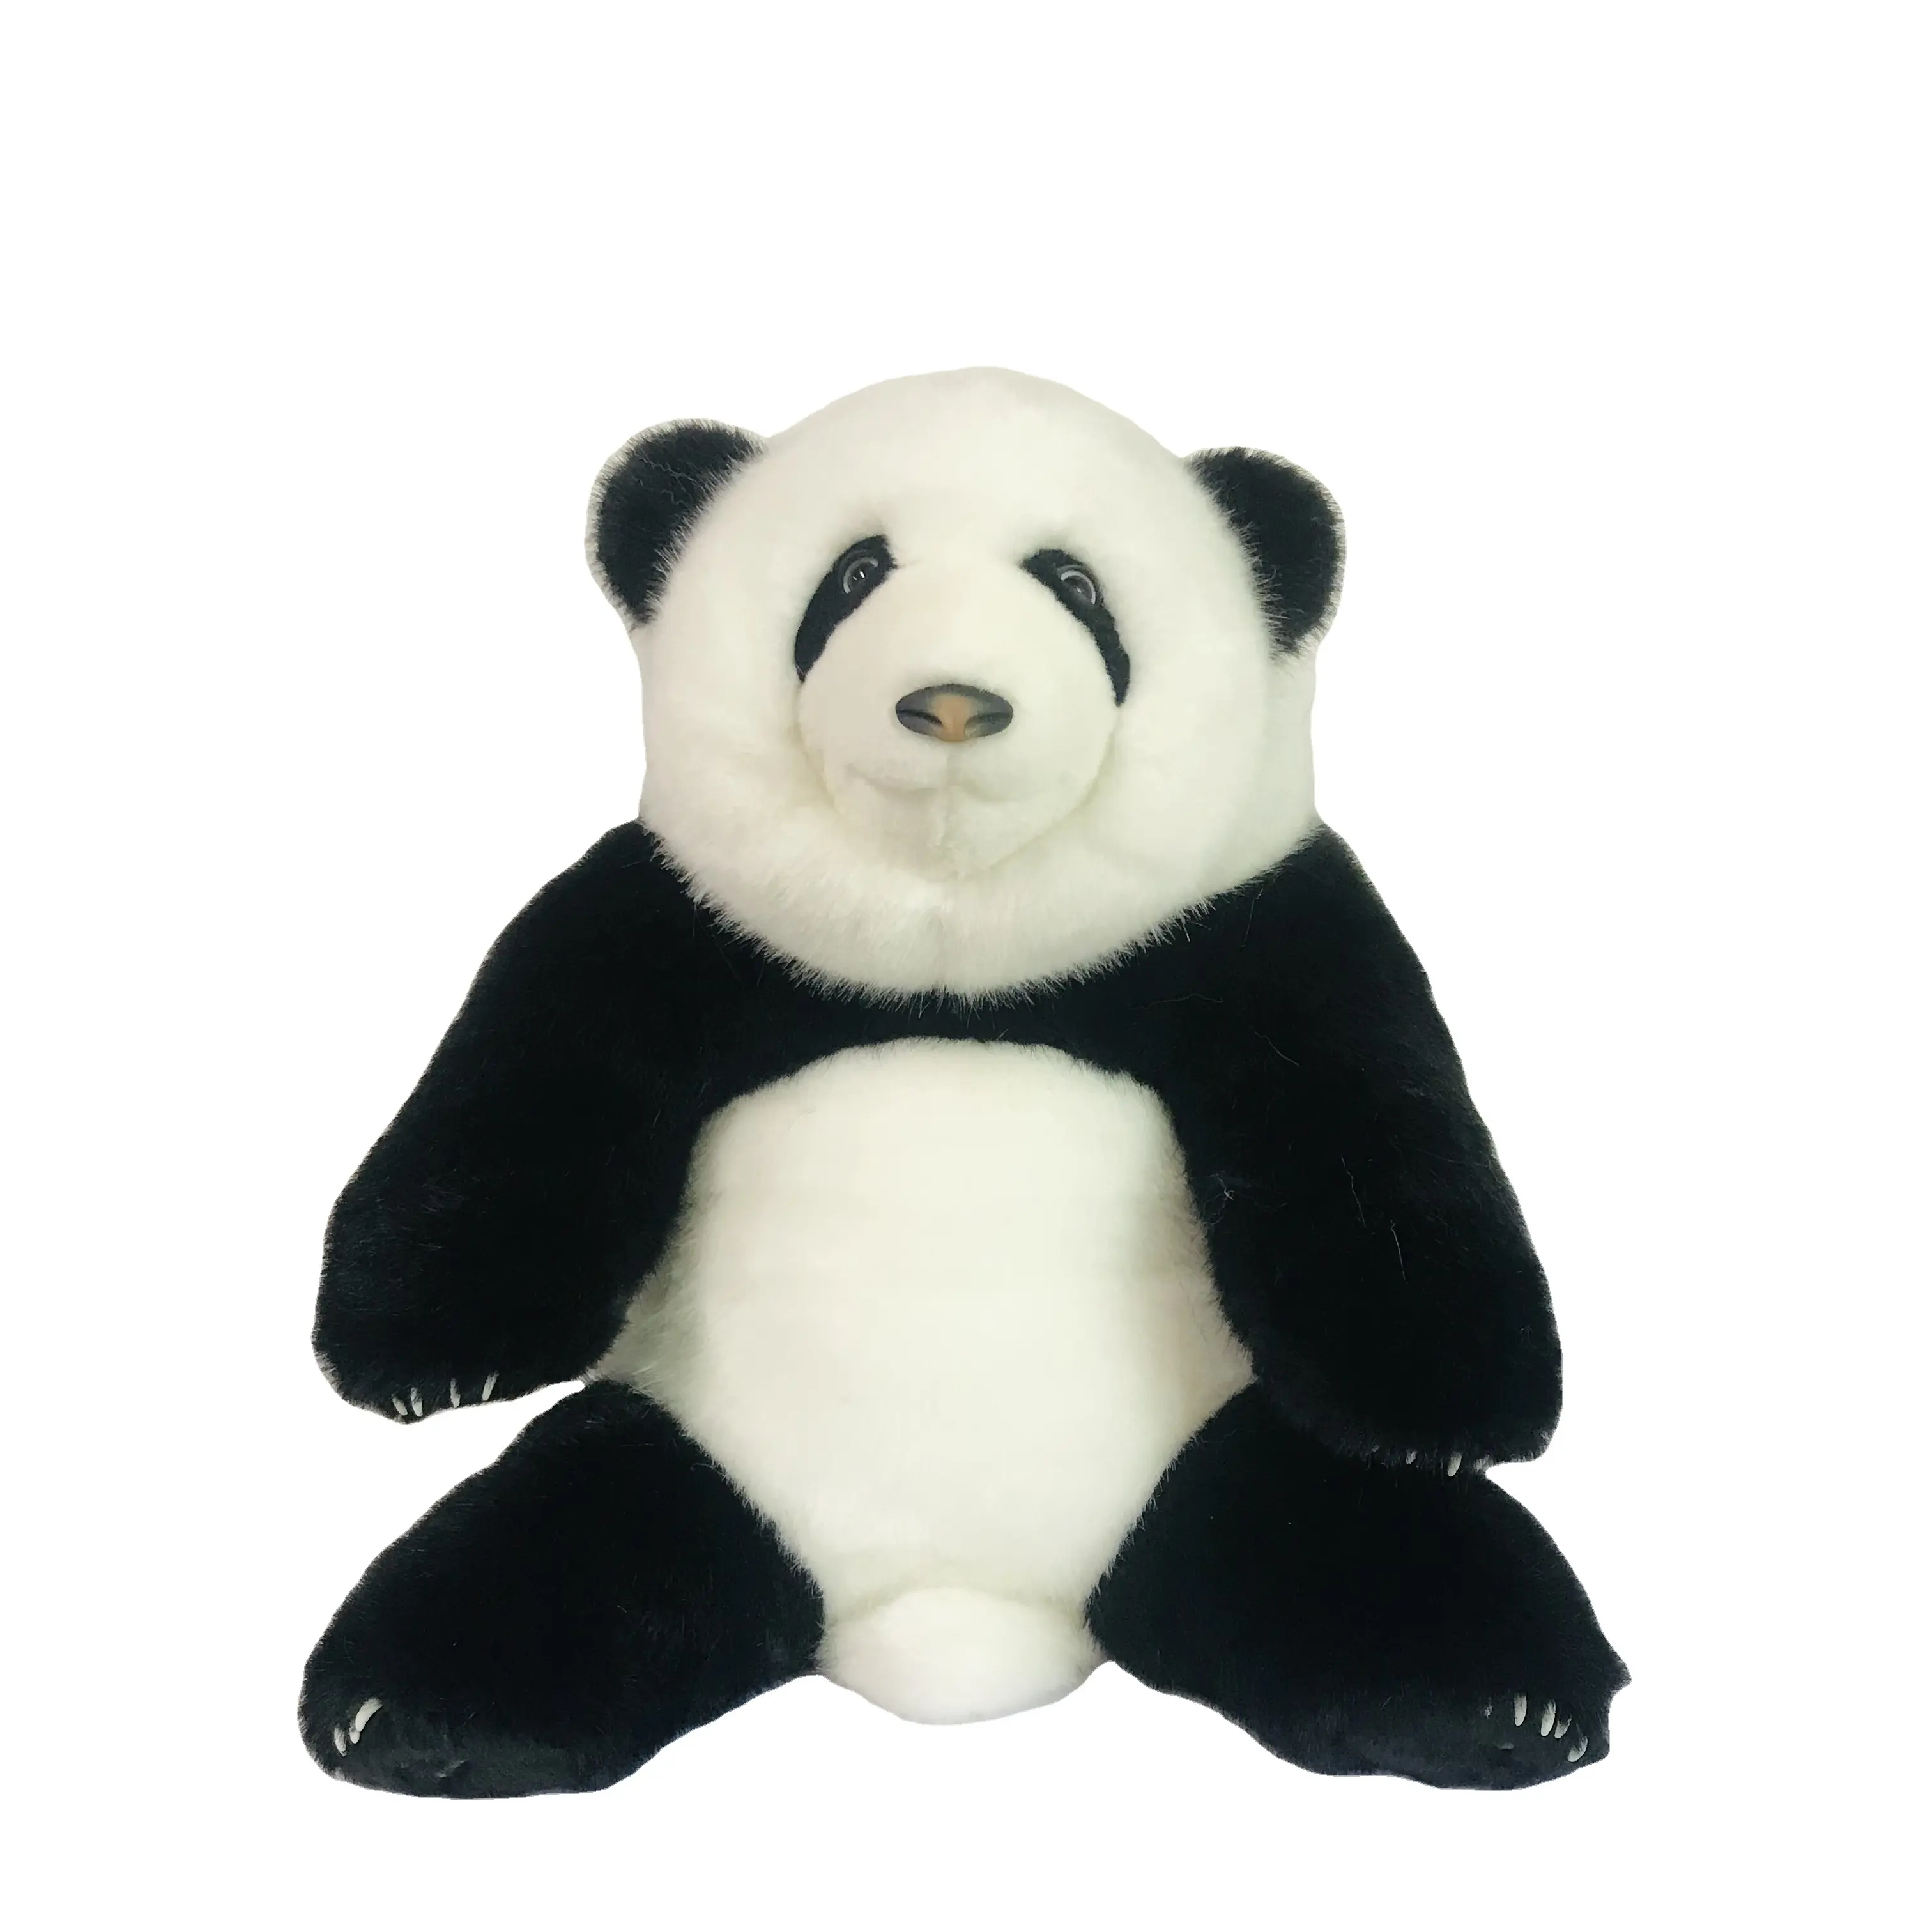 Realistico peluche panda gigante